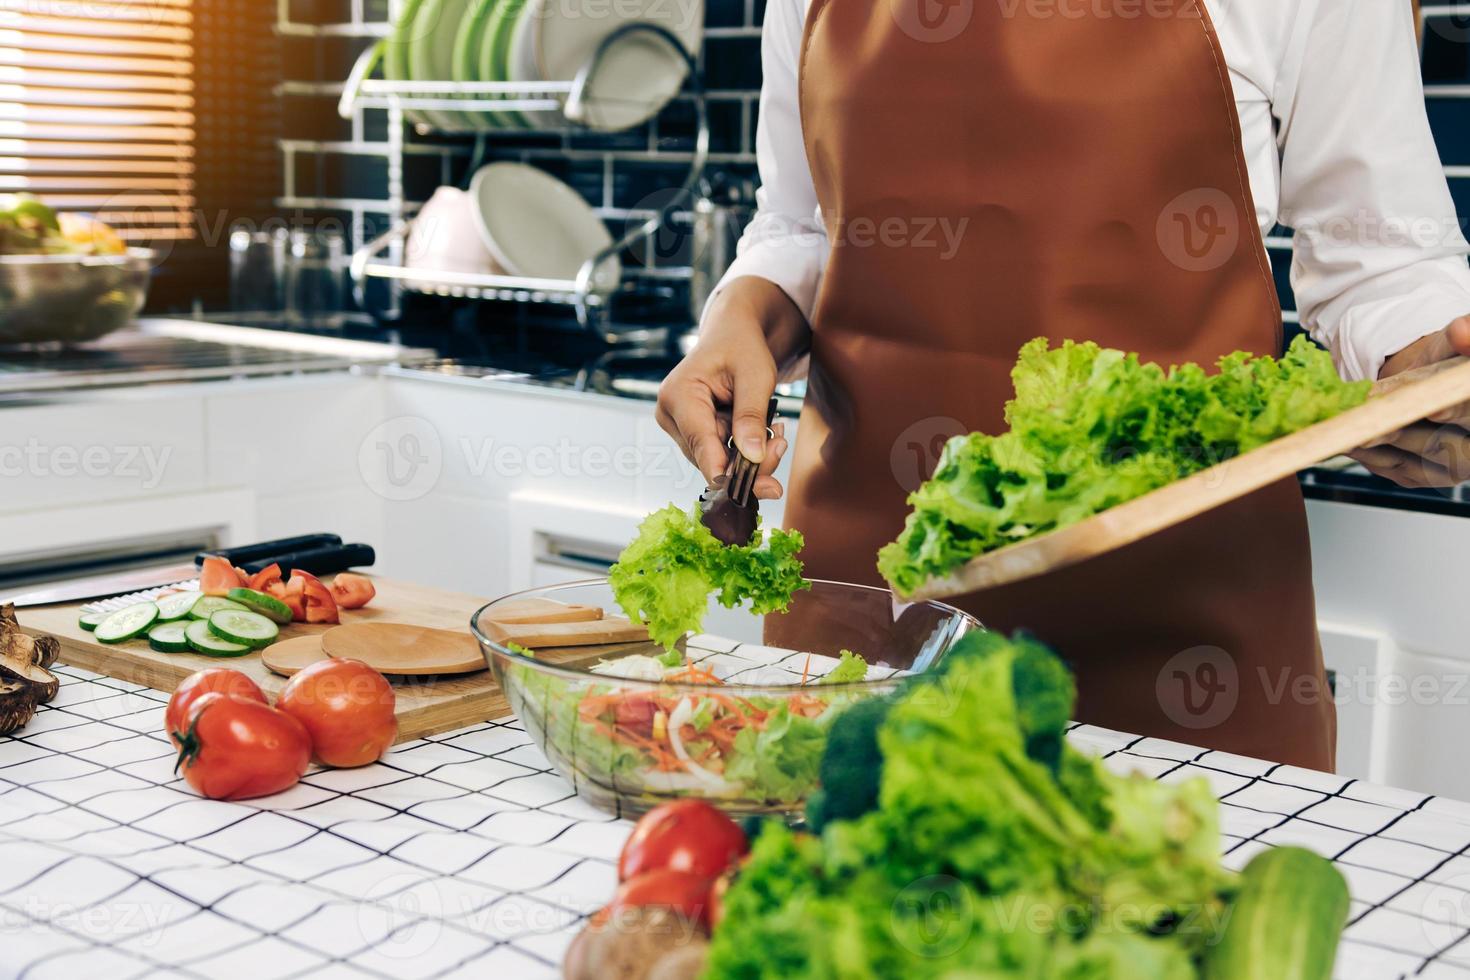 asiatische frau nimmt den salat auf dem holzschneidebrett mit einer zange auf die salattasse im küchenraum. foto